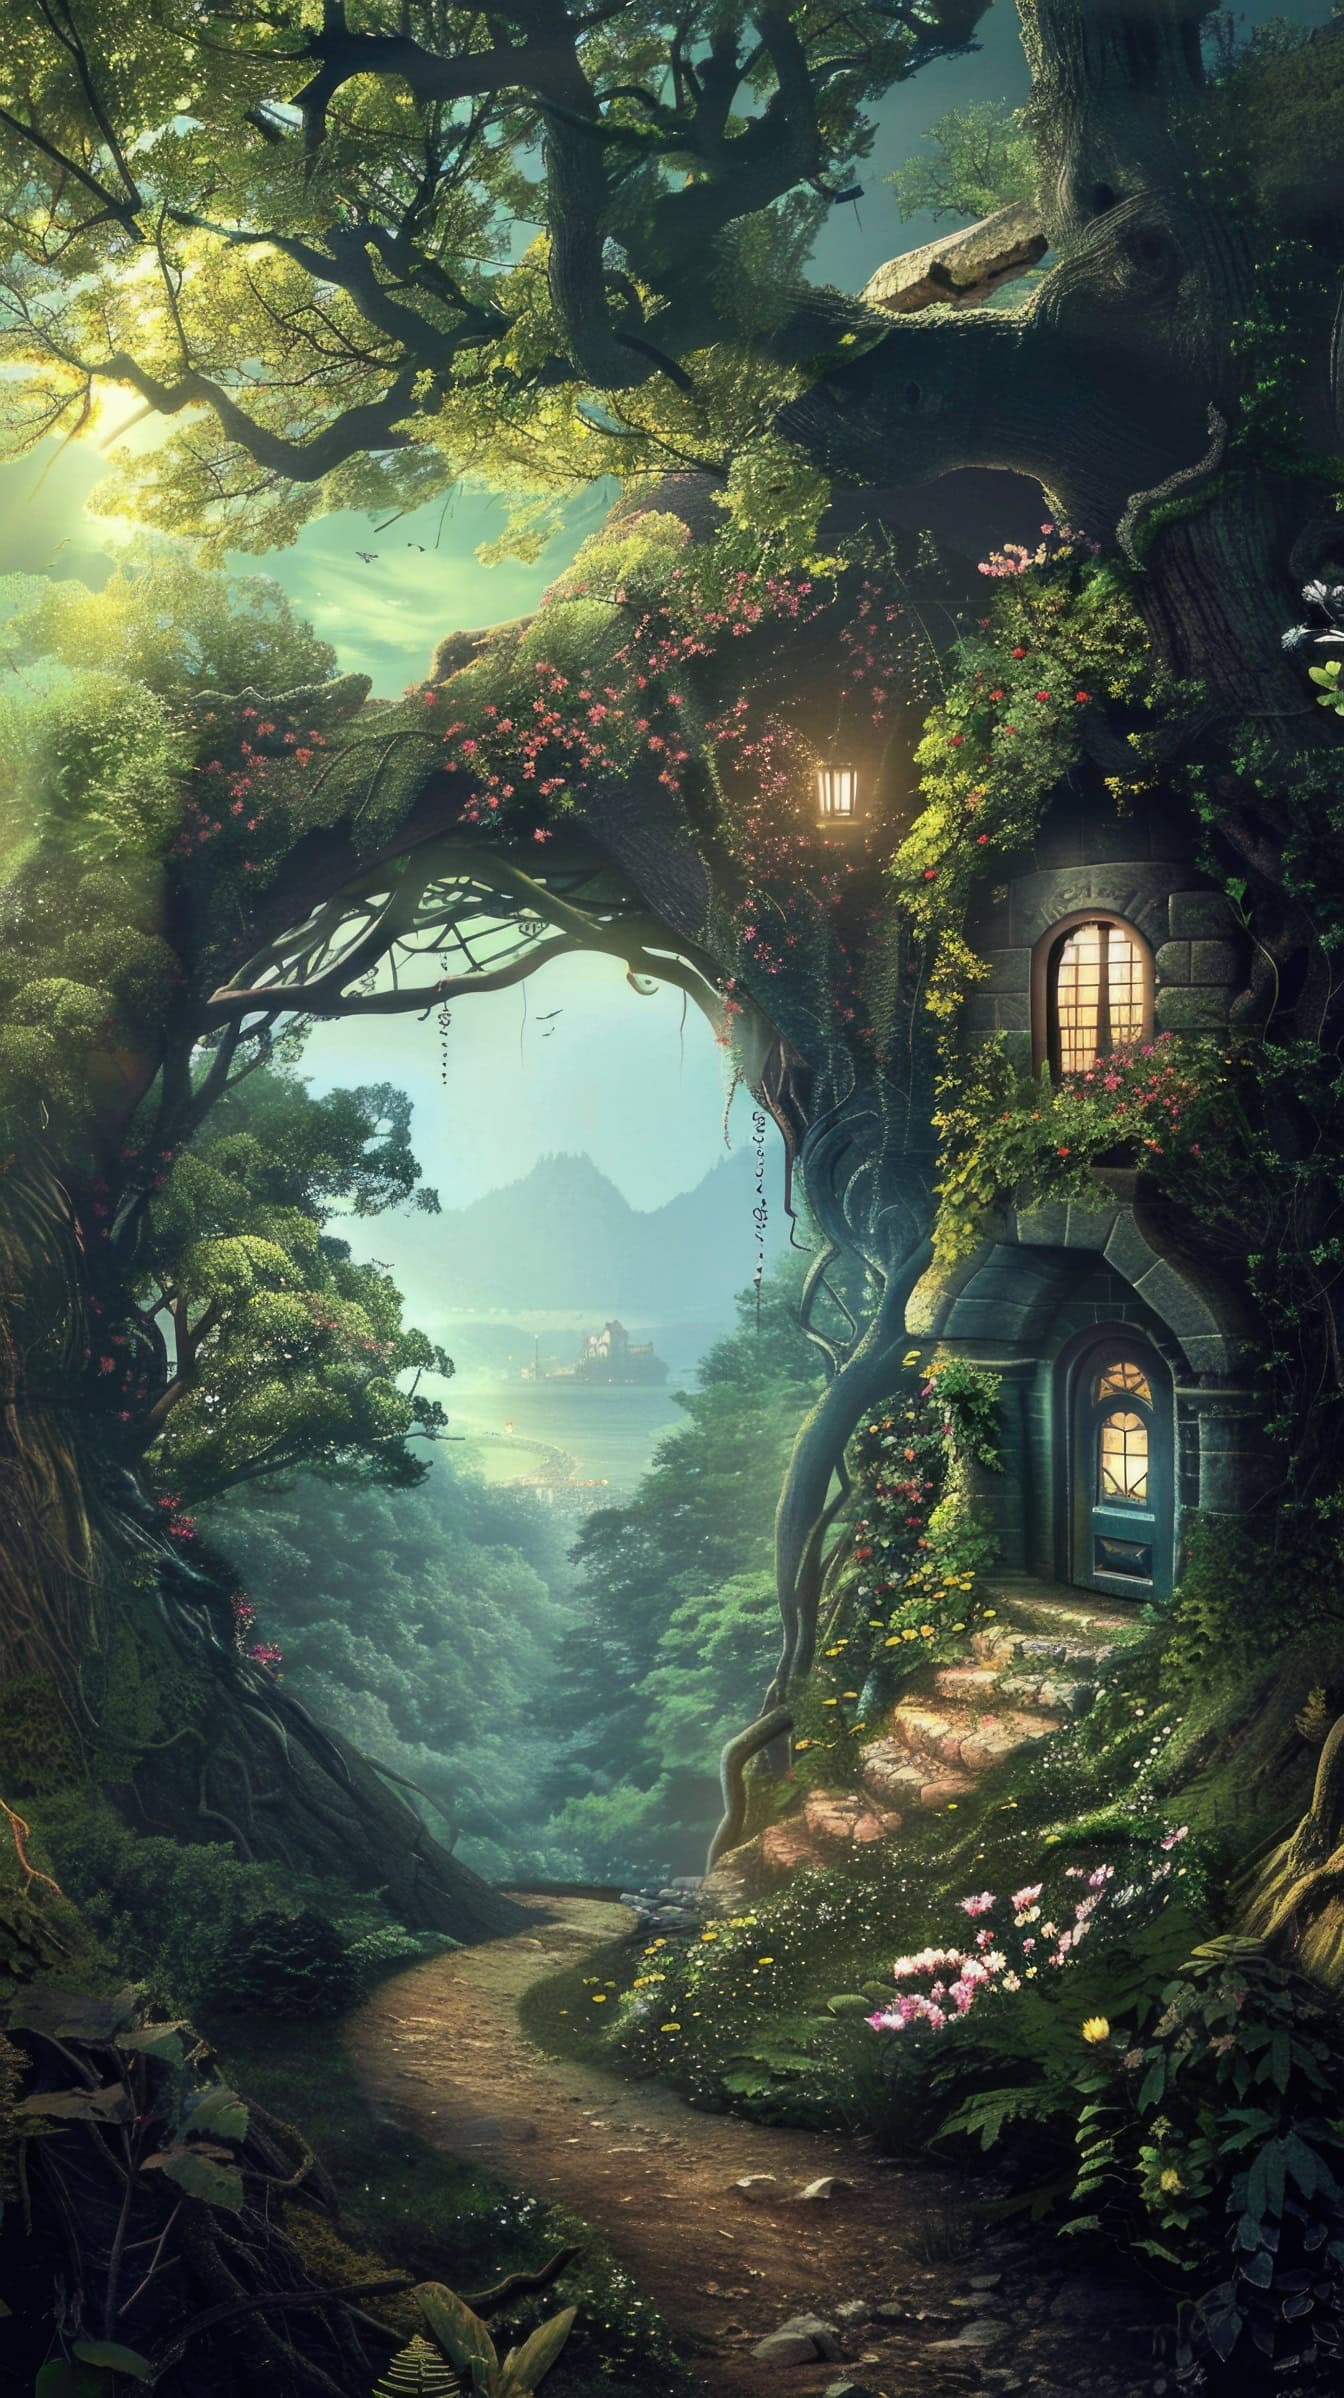 Una mágica casa del árbol de cuento de hadas a lo largo del camino del bosque por la noche